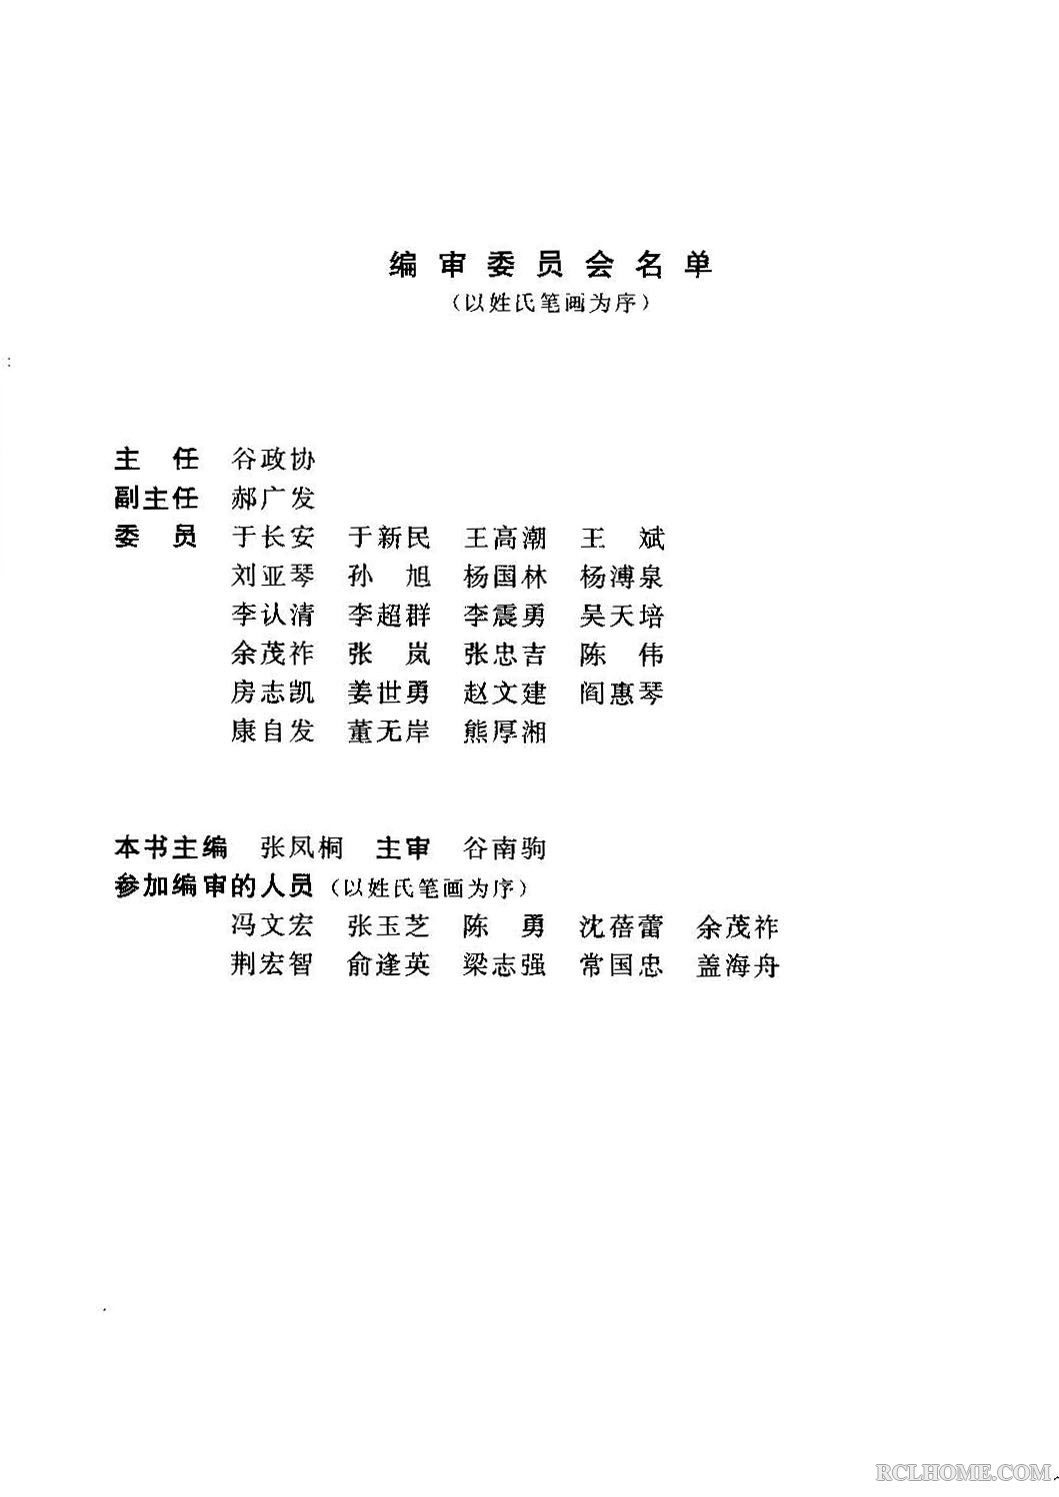 热处理工职业技能鉴定指南(1996) 作者.jpg